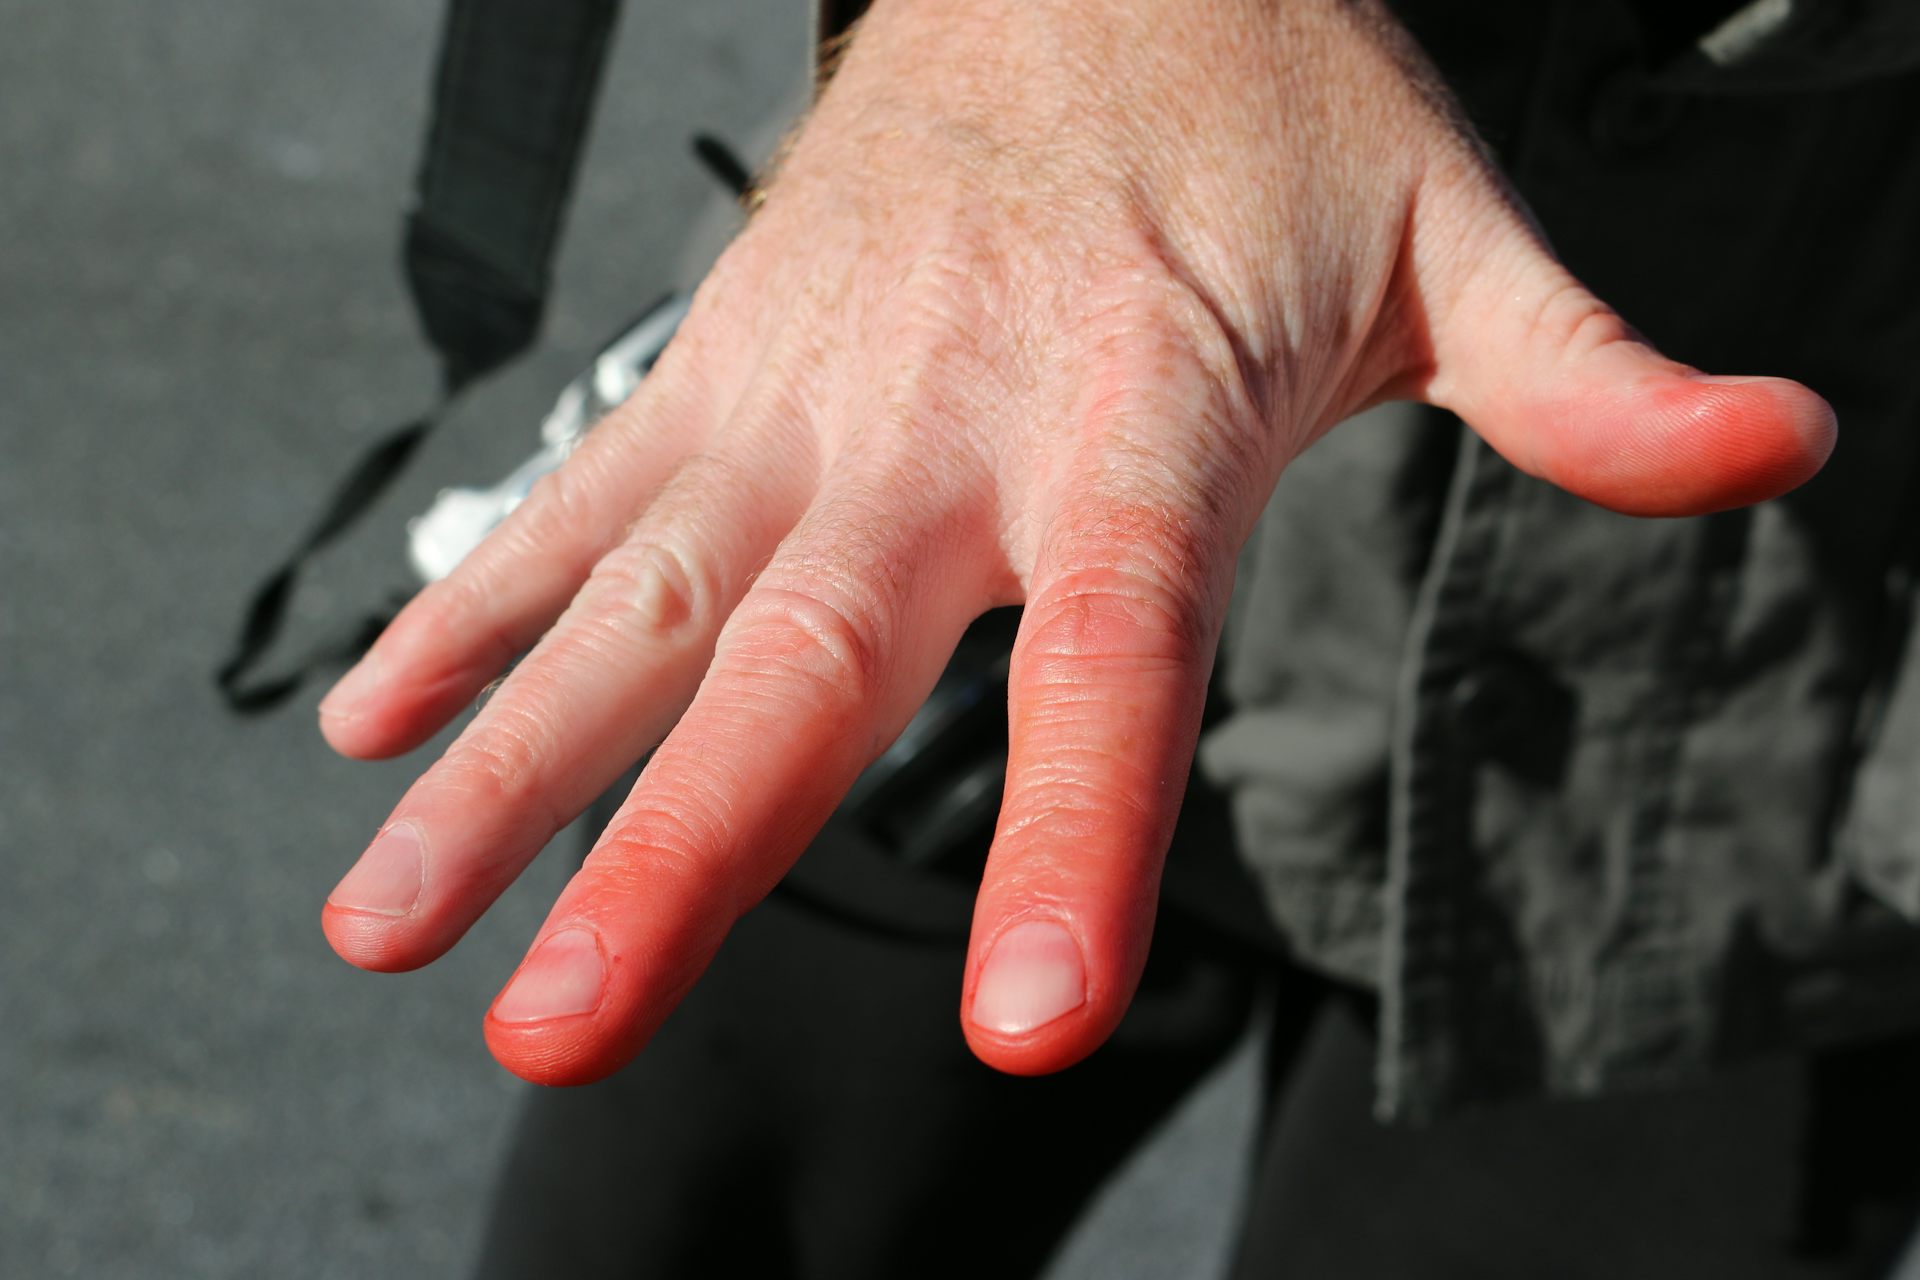  Le dita sono diventate rosse per congelamento.